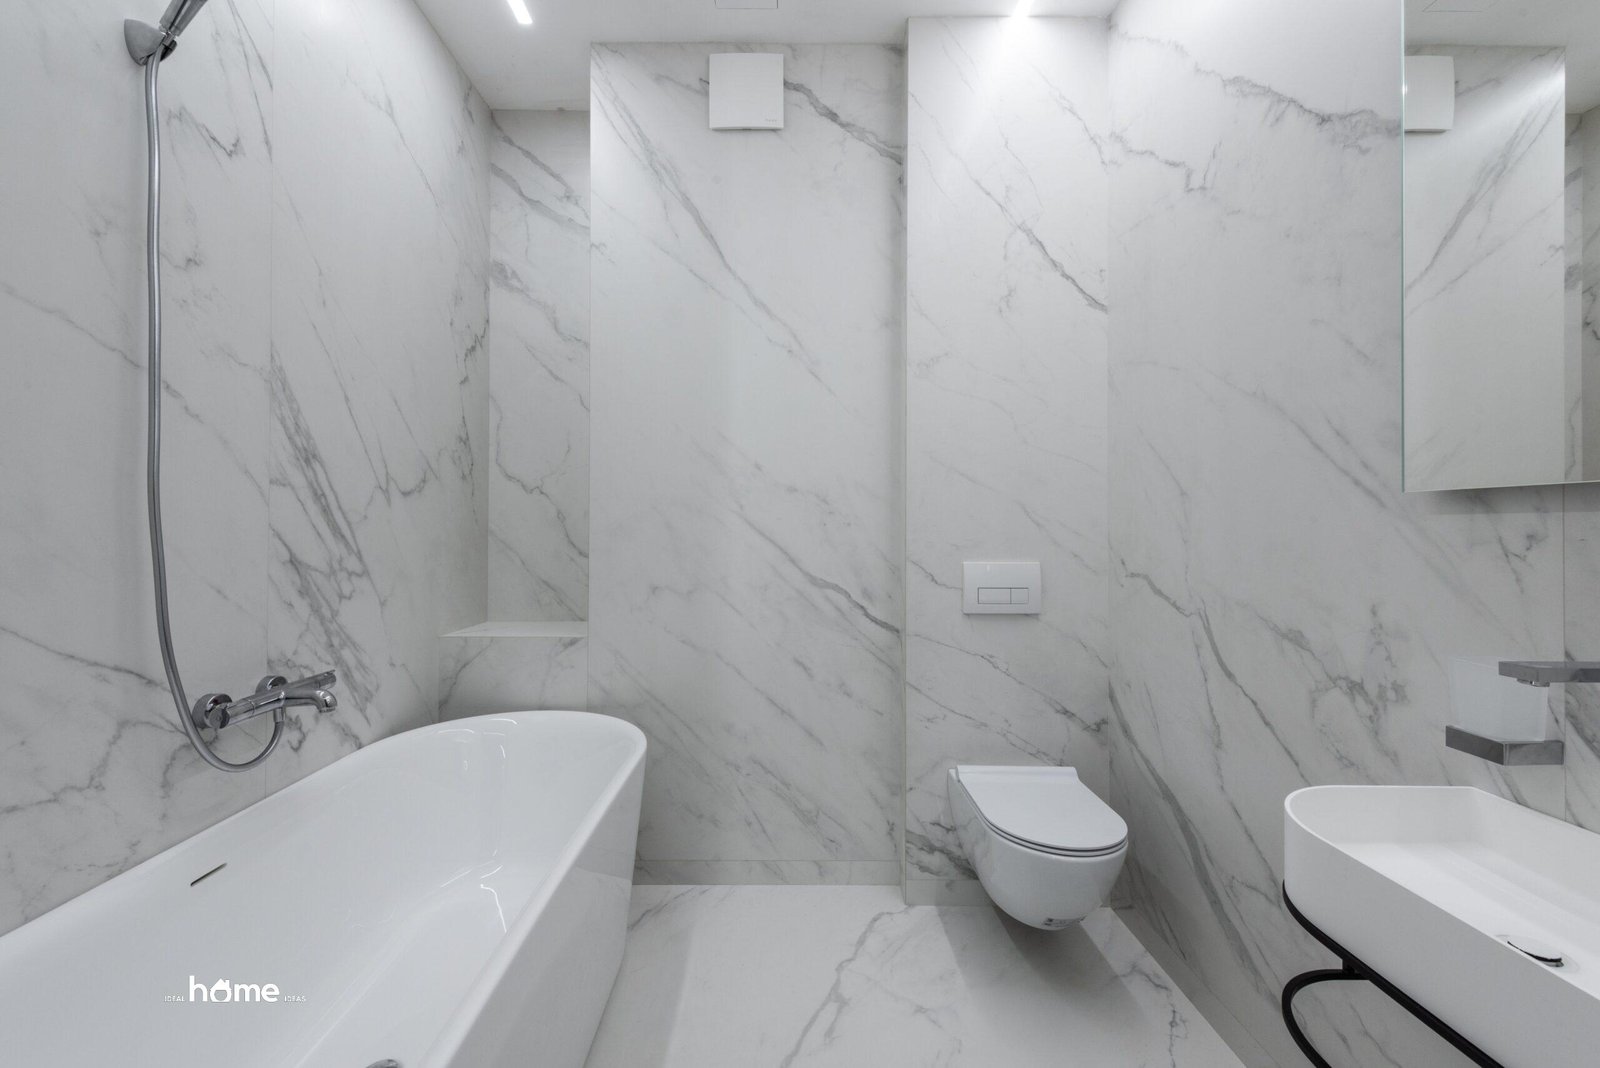 Diy Project: Easy Ways To Upgrade Your Bathroom Decor